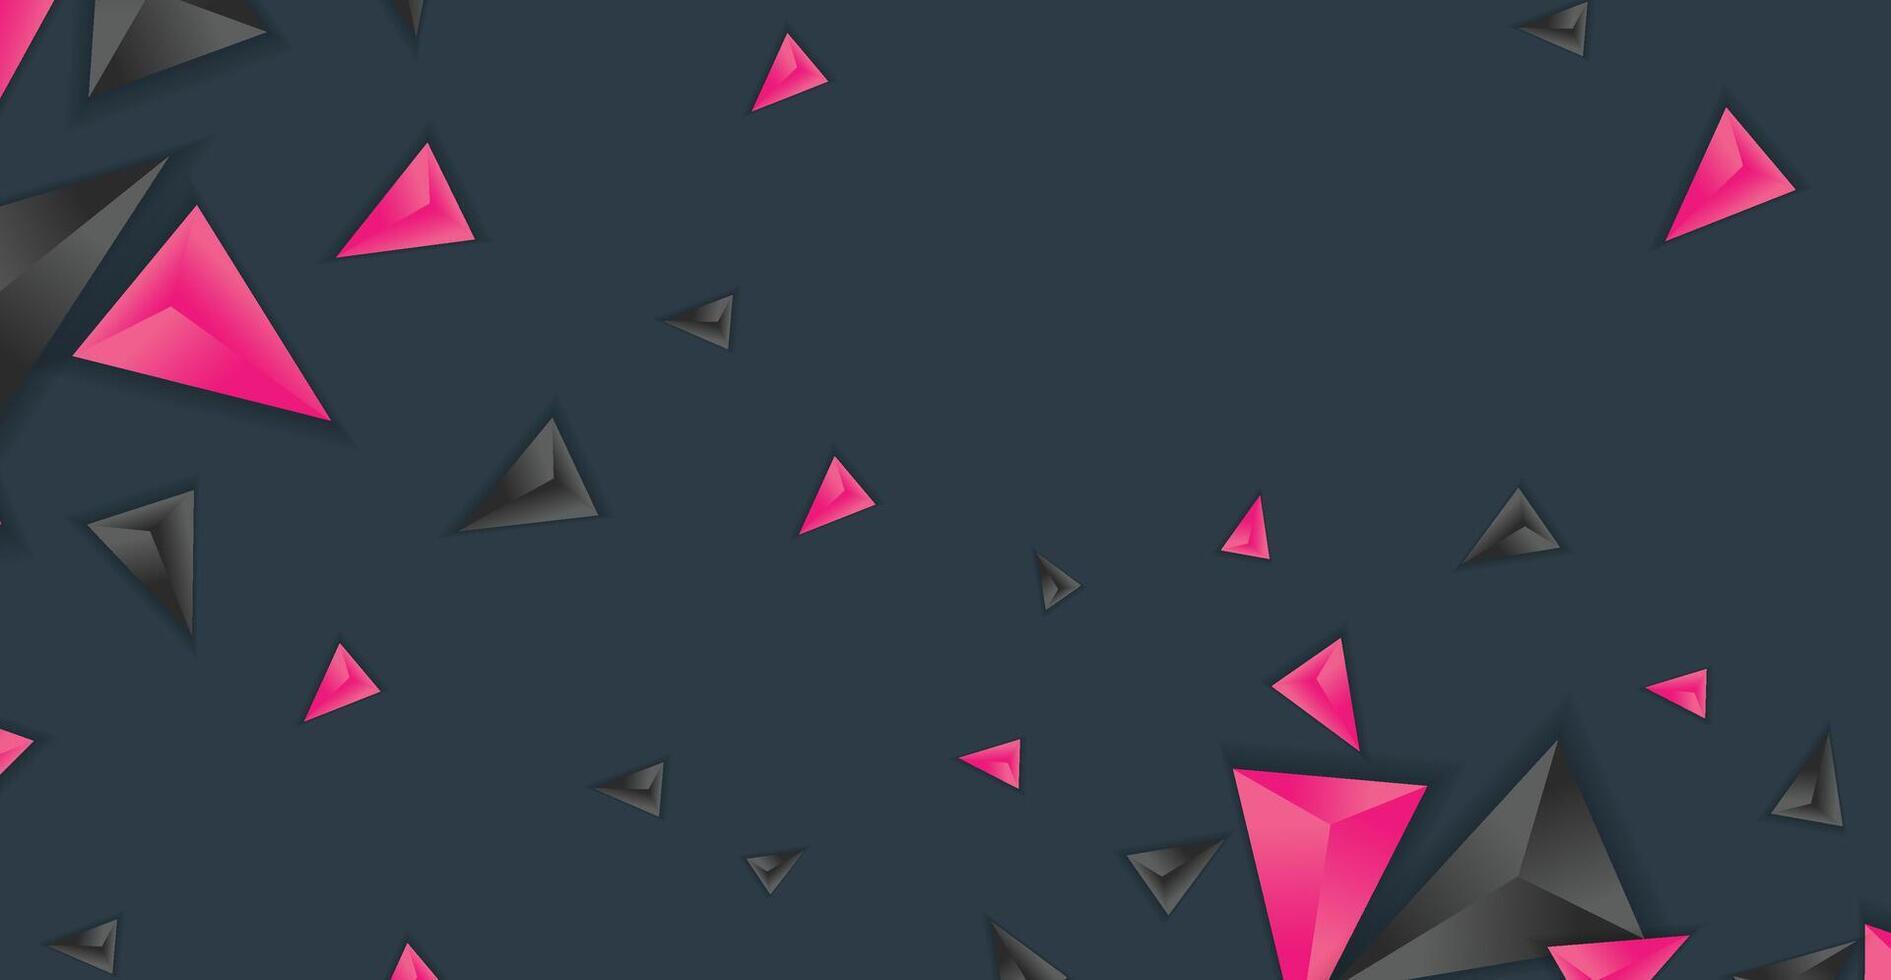 abstrakt Komposition von Dreieck. minimal geometrisch Hintergrund vektor